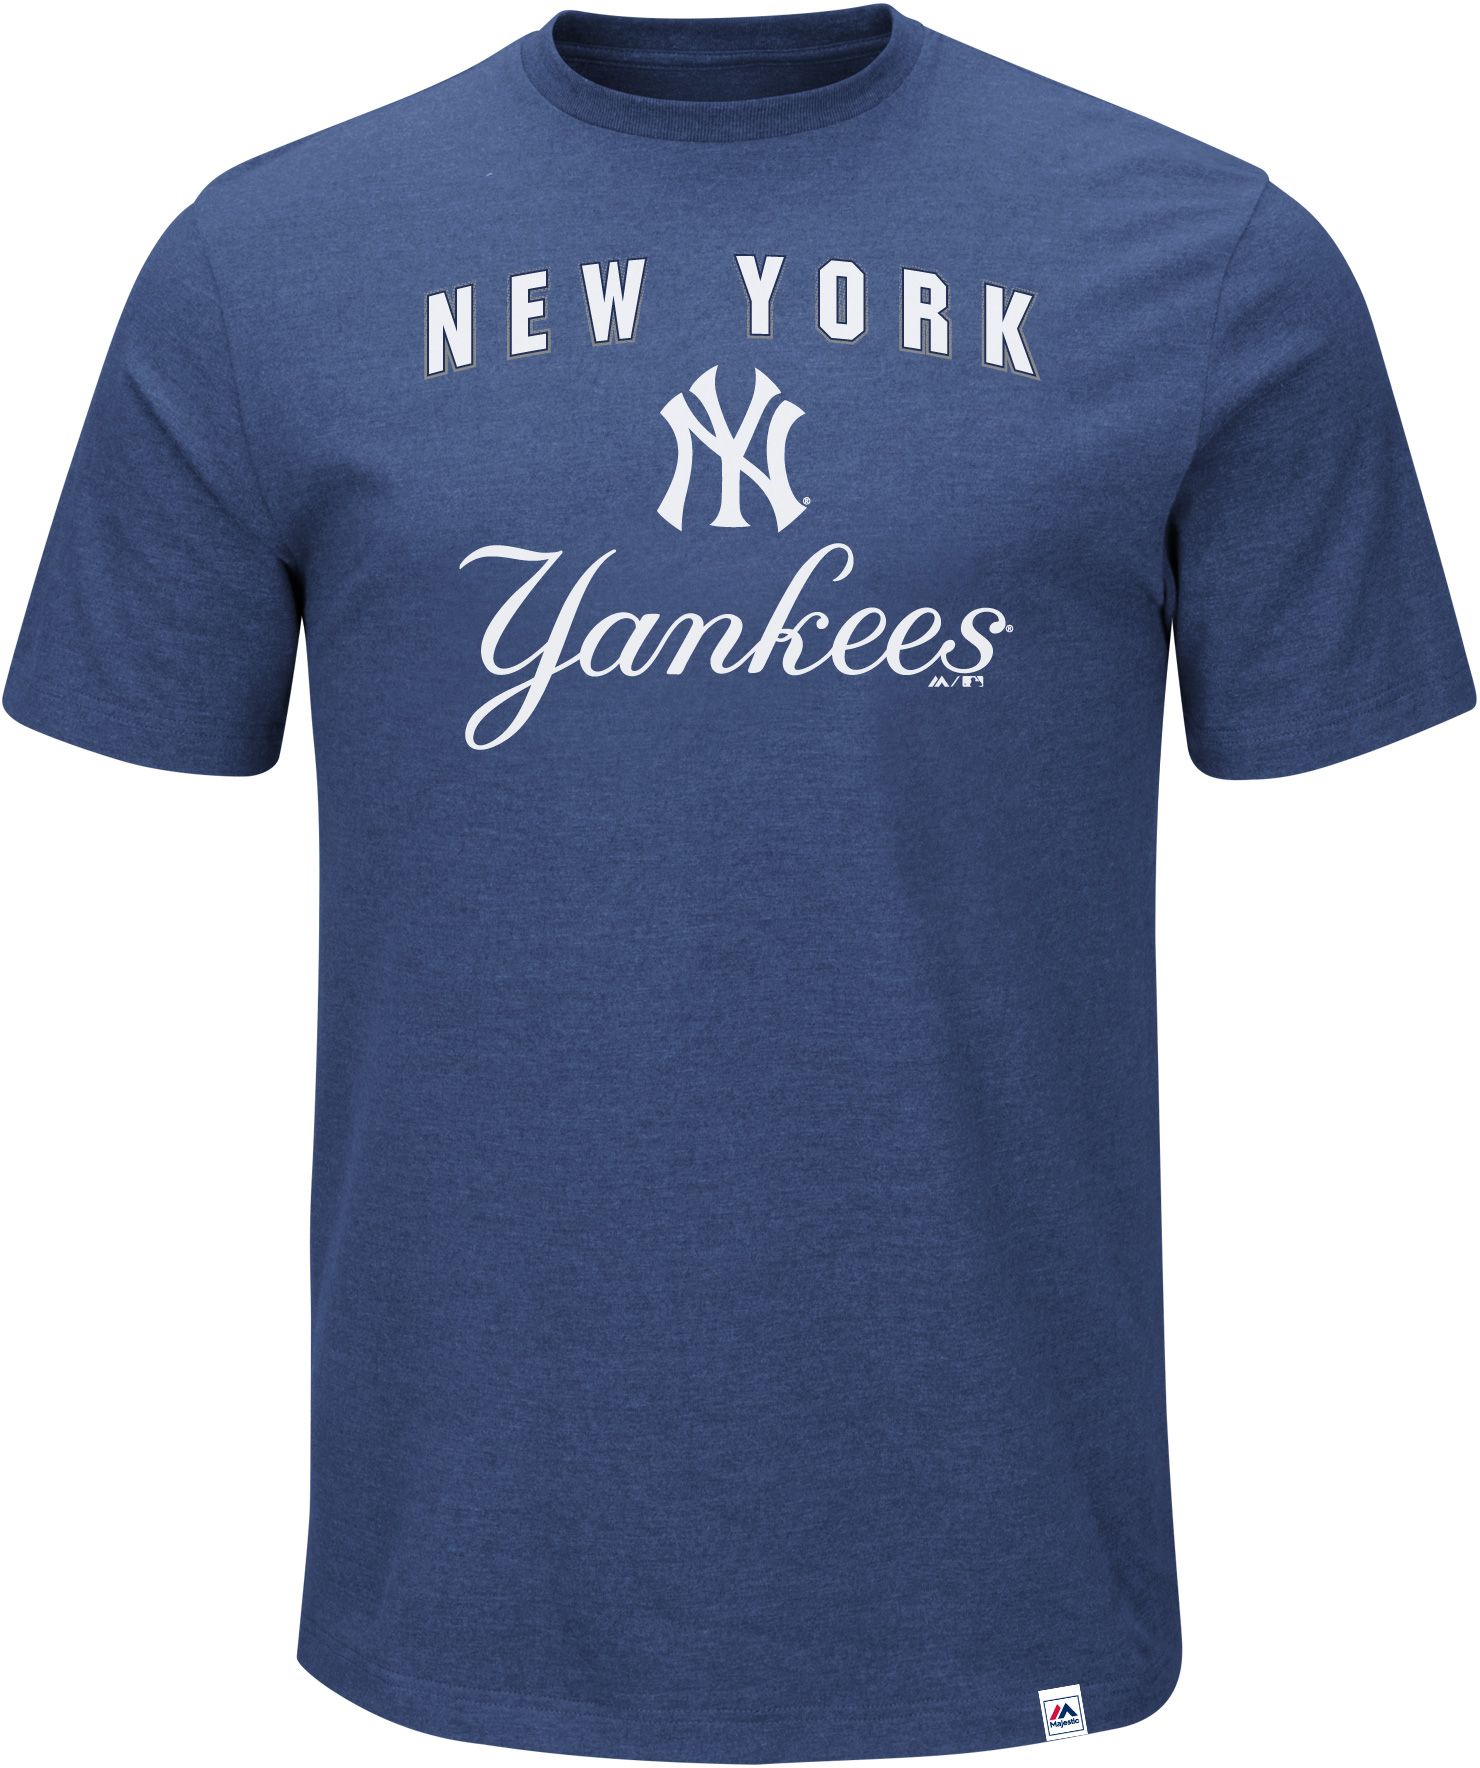 New York Yankees Men's Apparel | DICK'S Sporting Goods